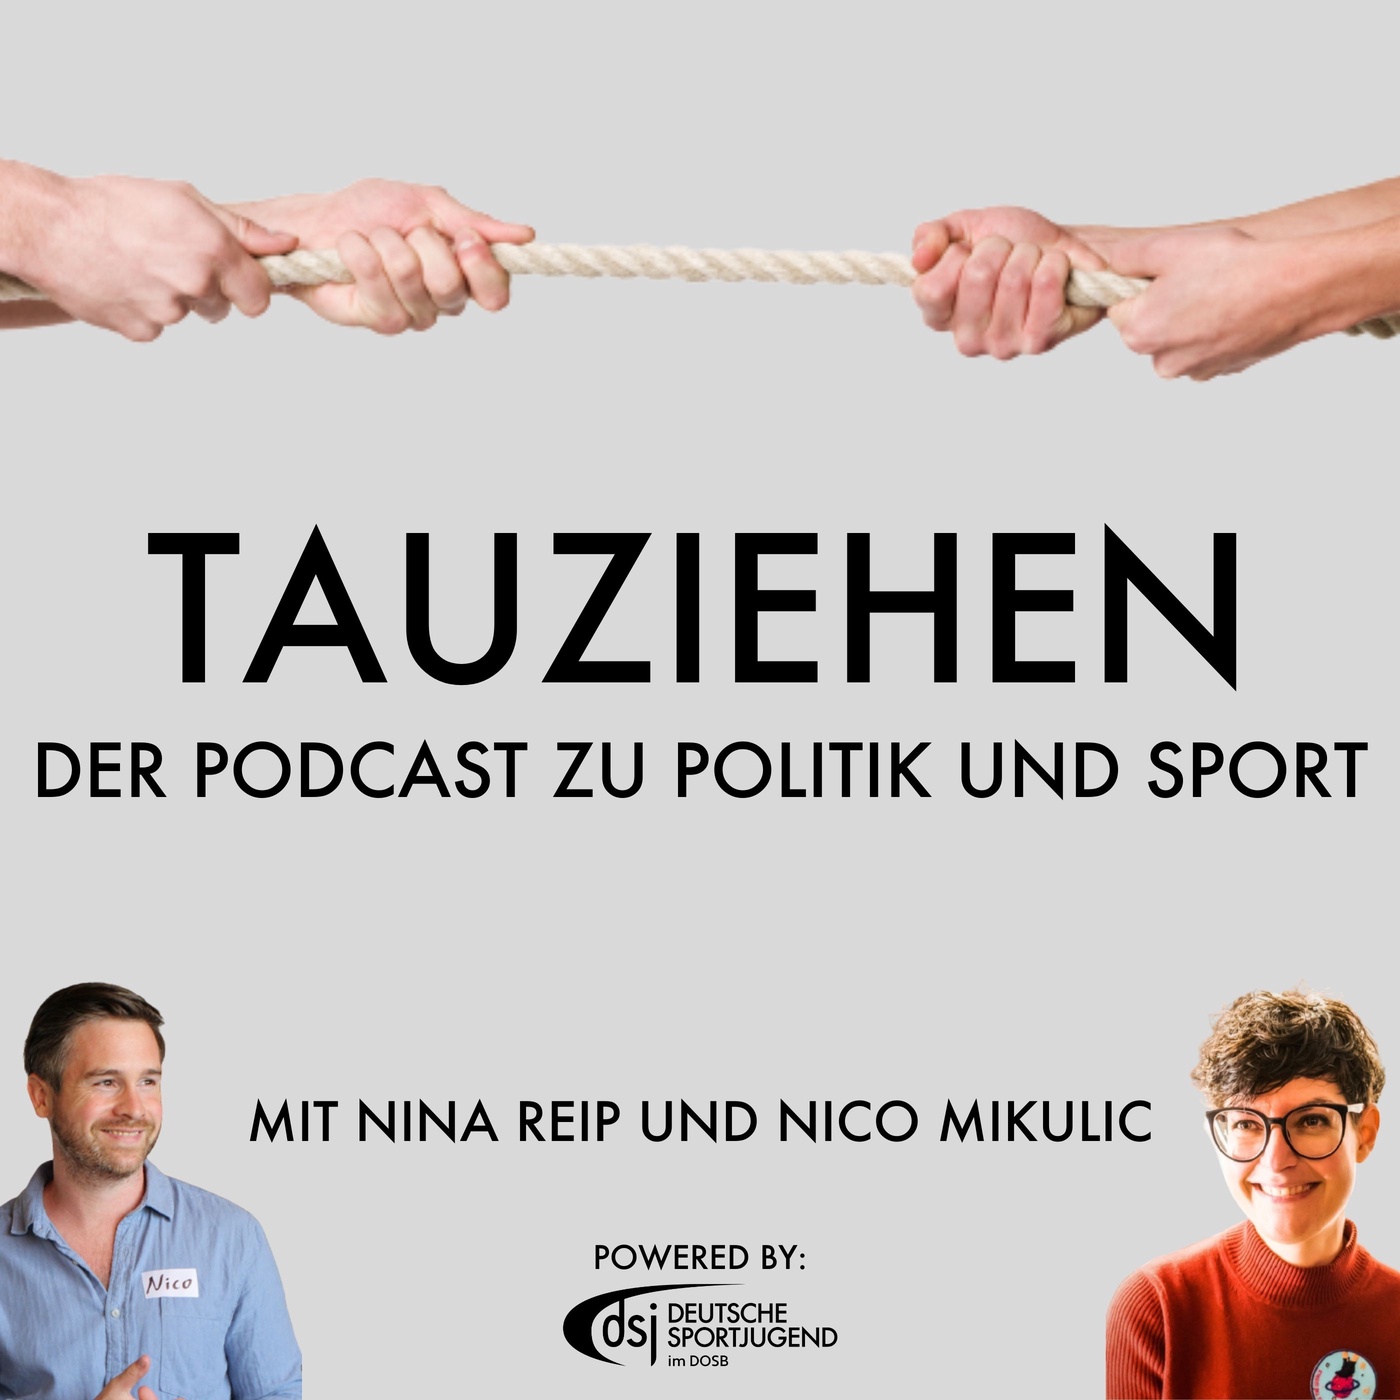 Tauziehen - Der Podcast zu Politik und Sport!